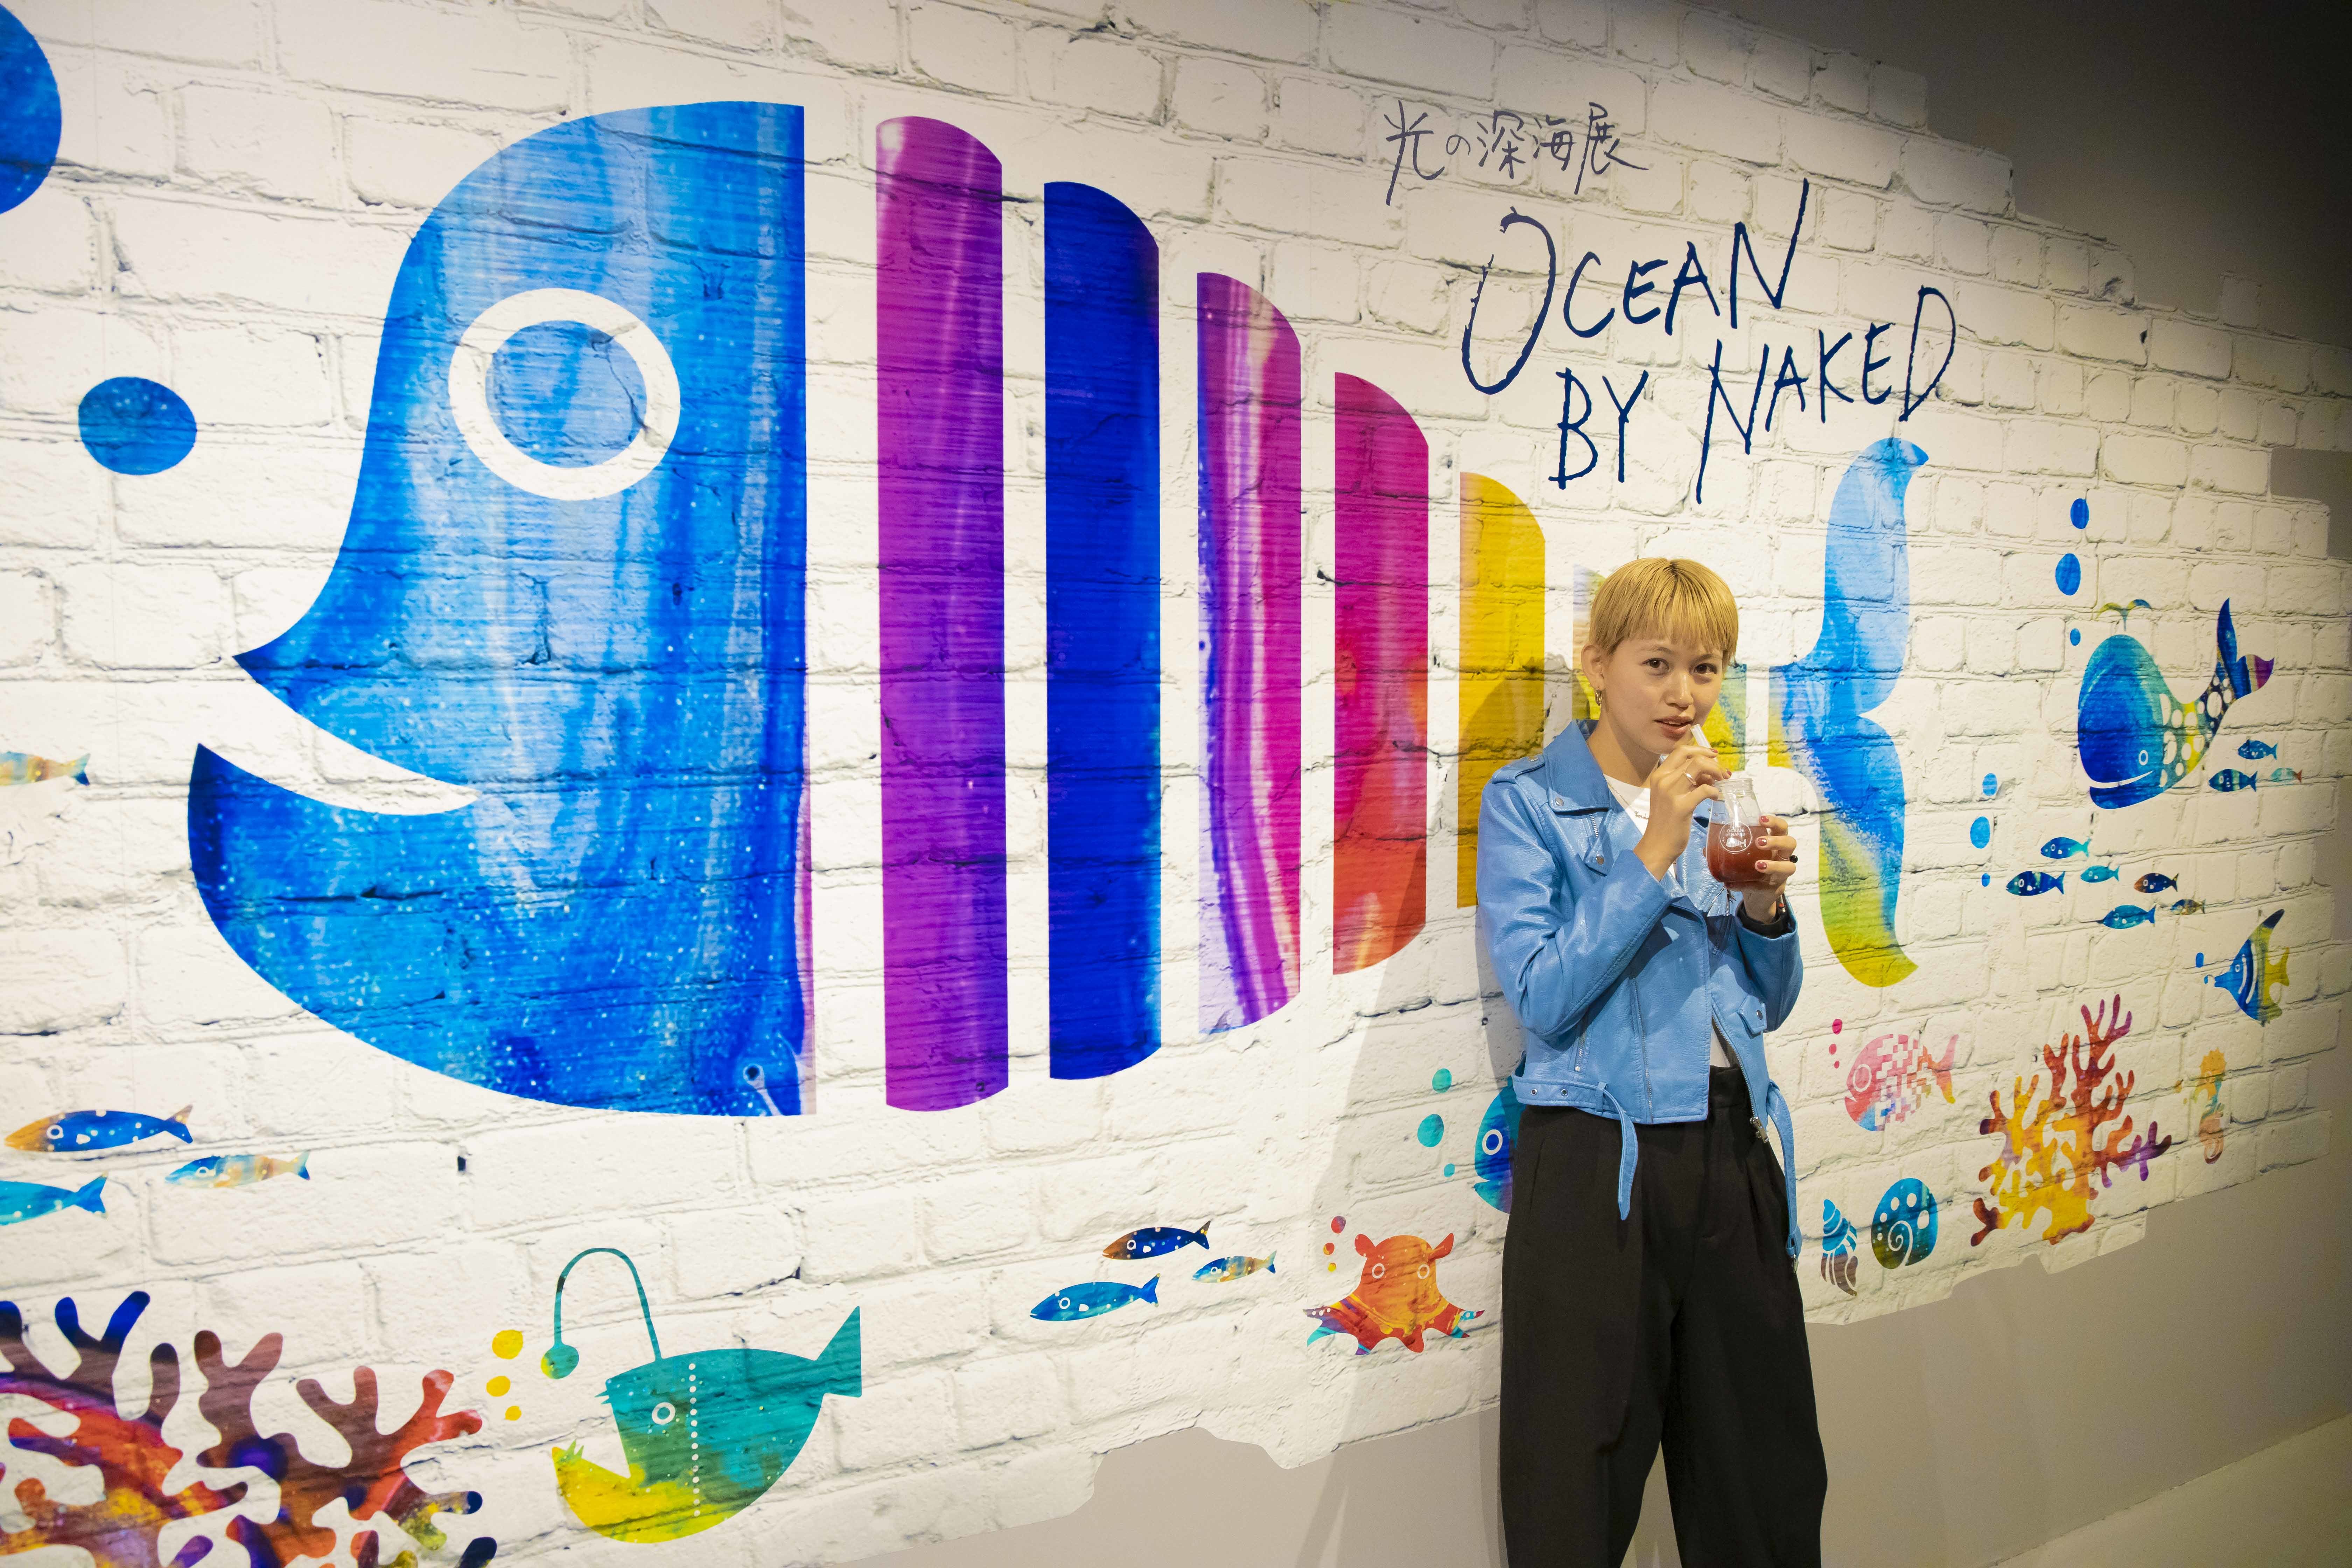 千裕さんが飲んでいるのは、OCEAN BY NAKEDオリジナル フルイドタピオカボトル700円（税込）